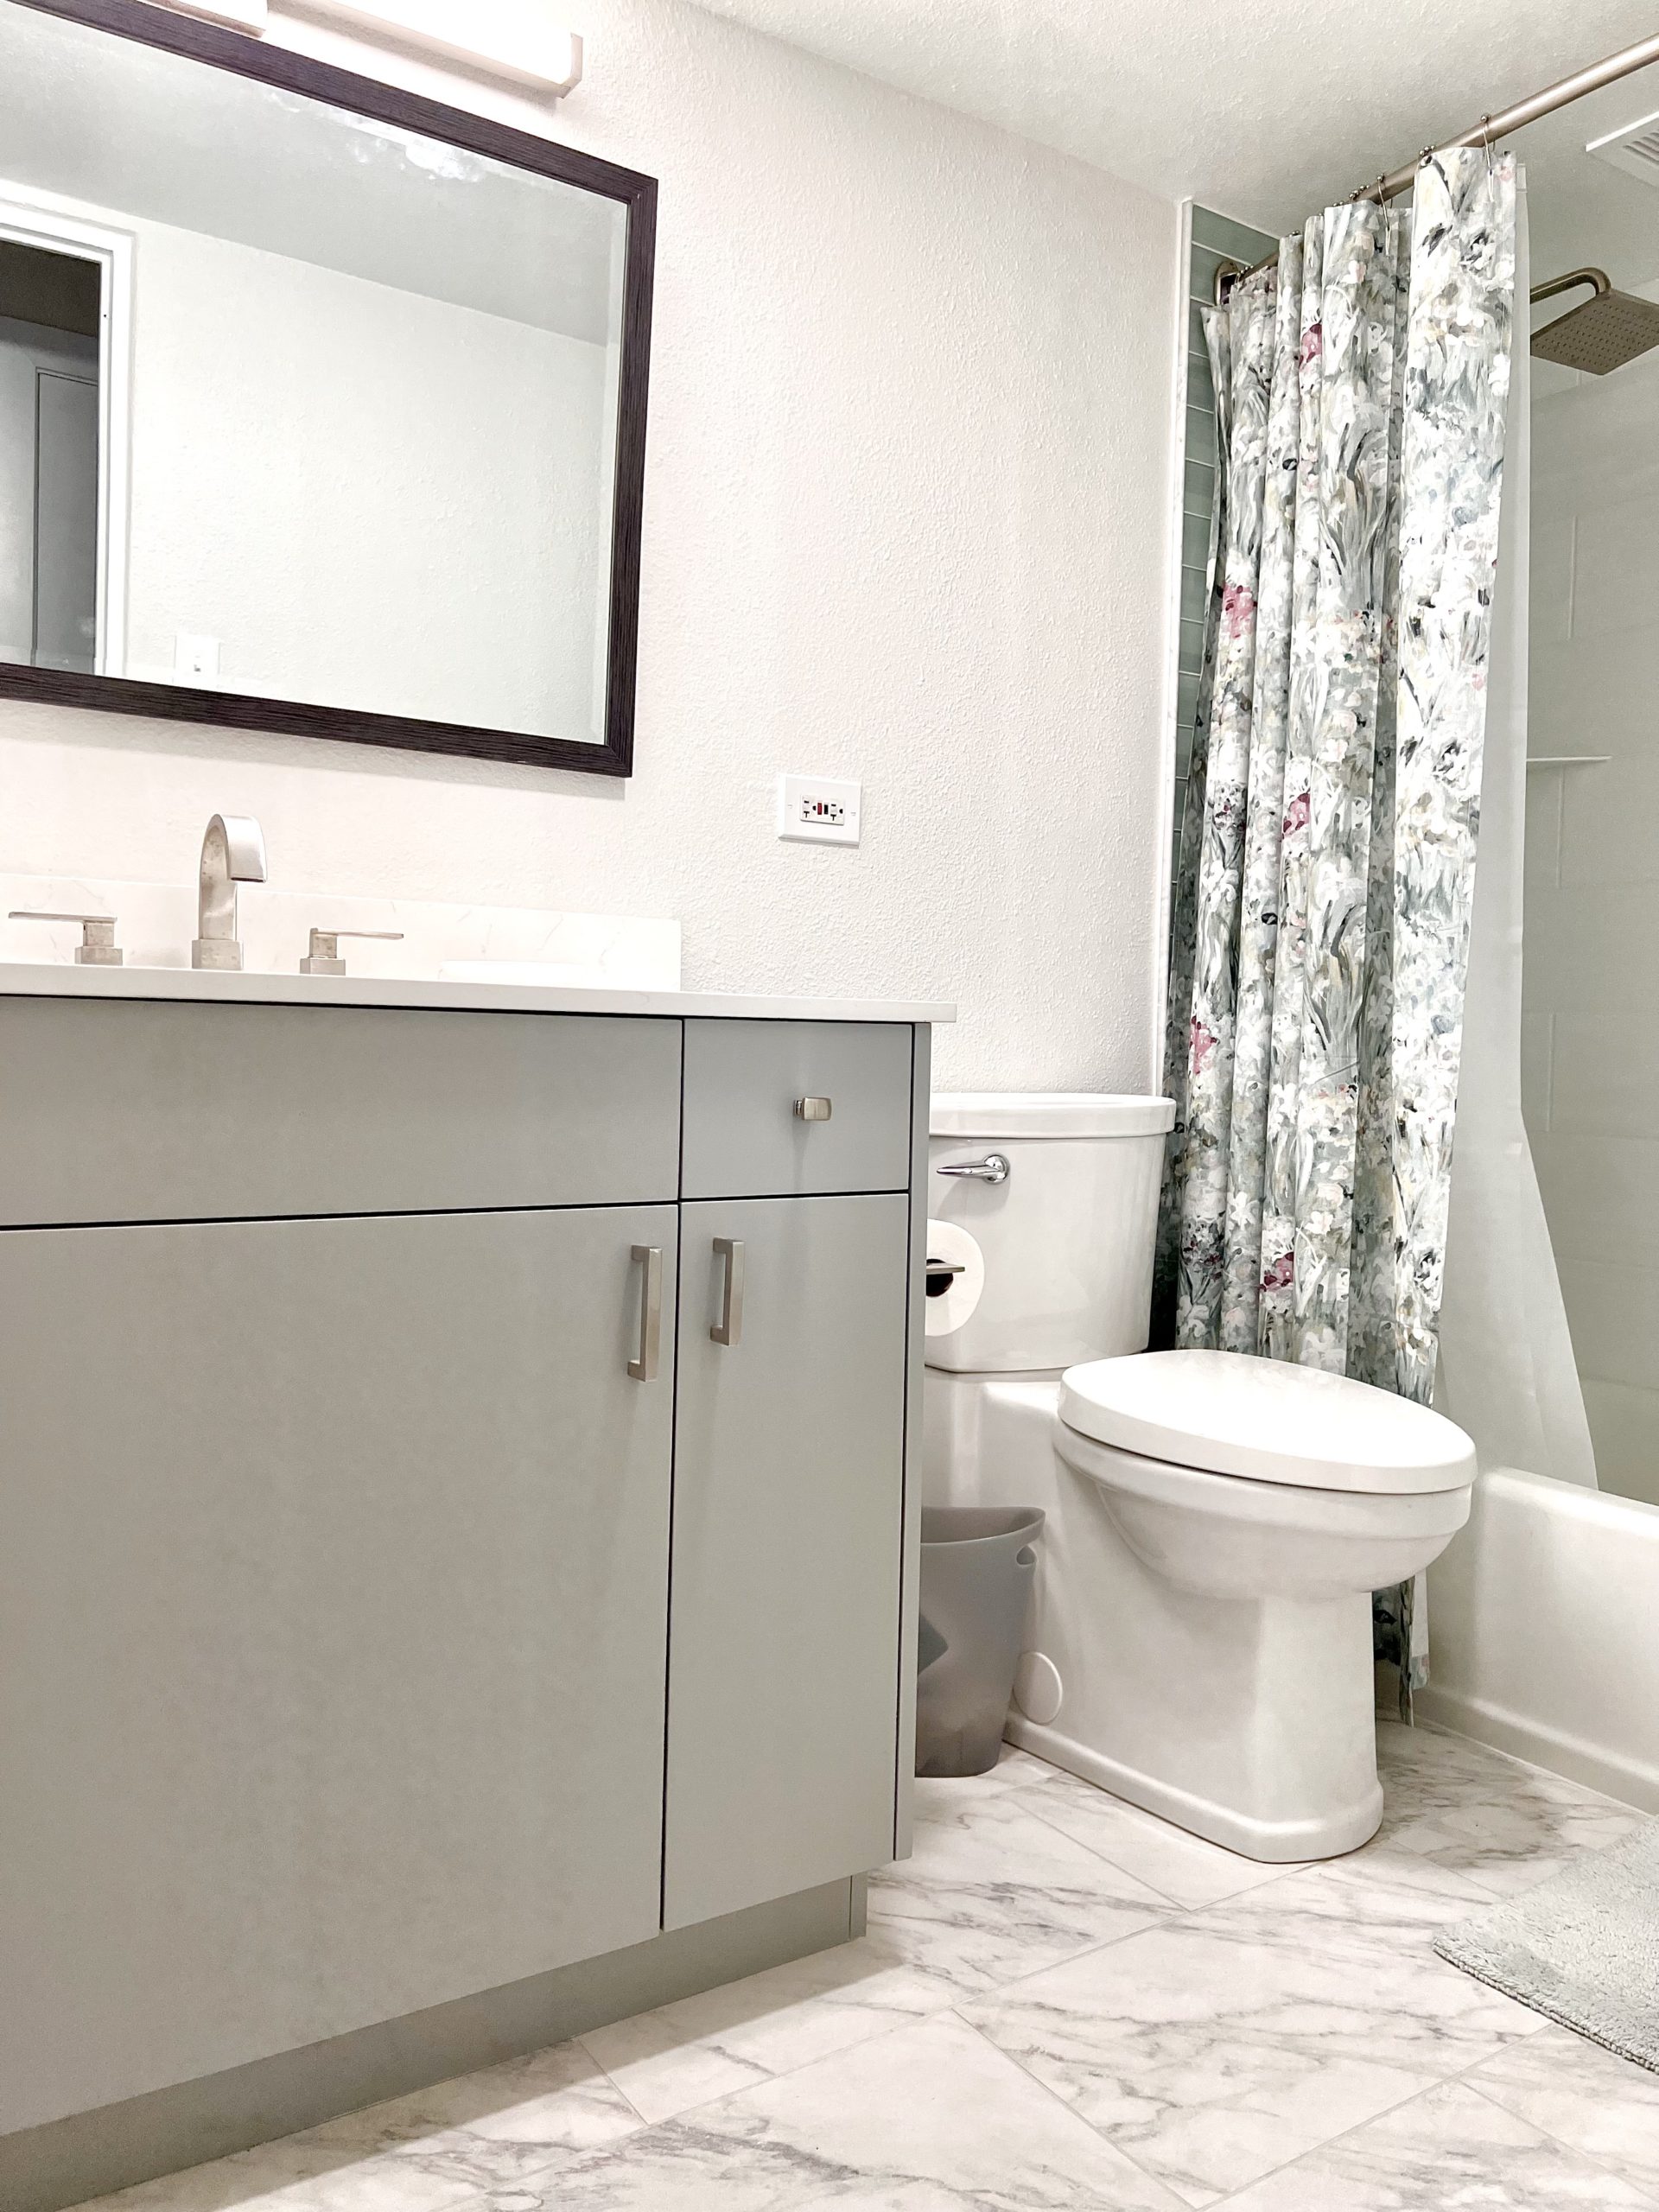 Sustainable Design Build bathroom remodel Denver, CO washington st condo